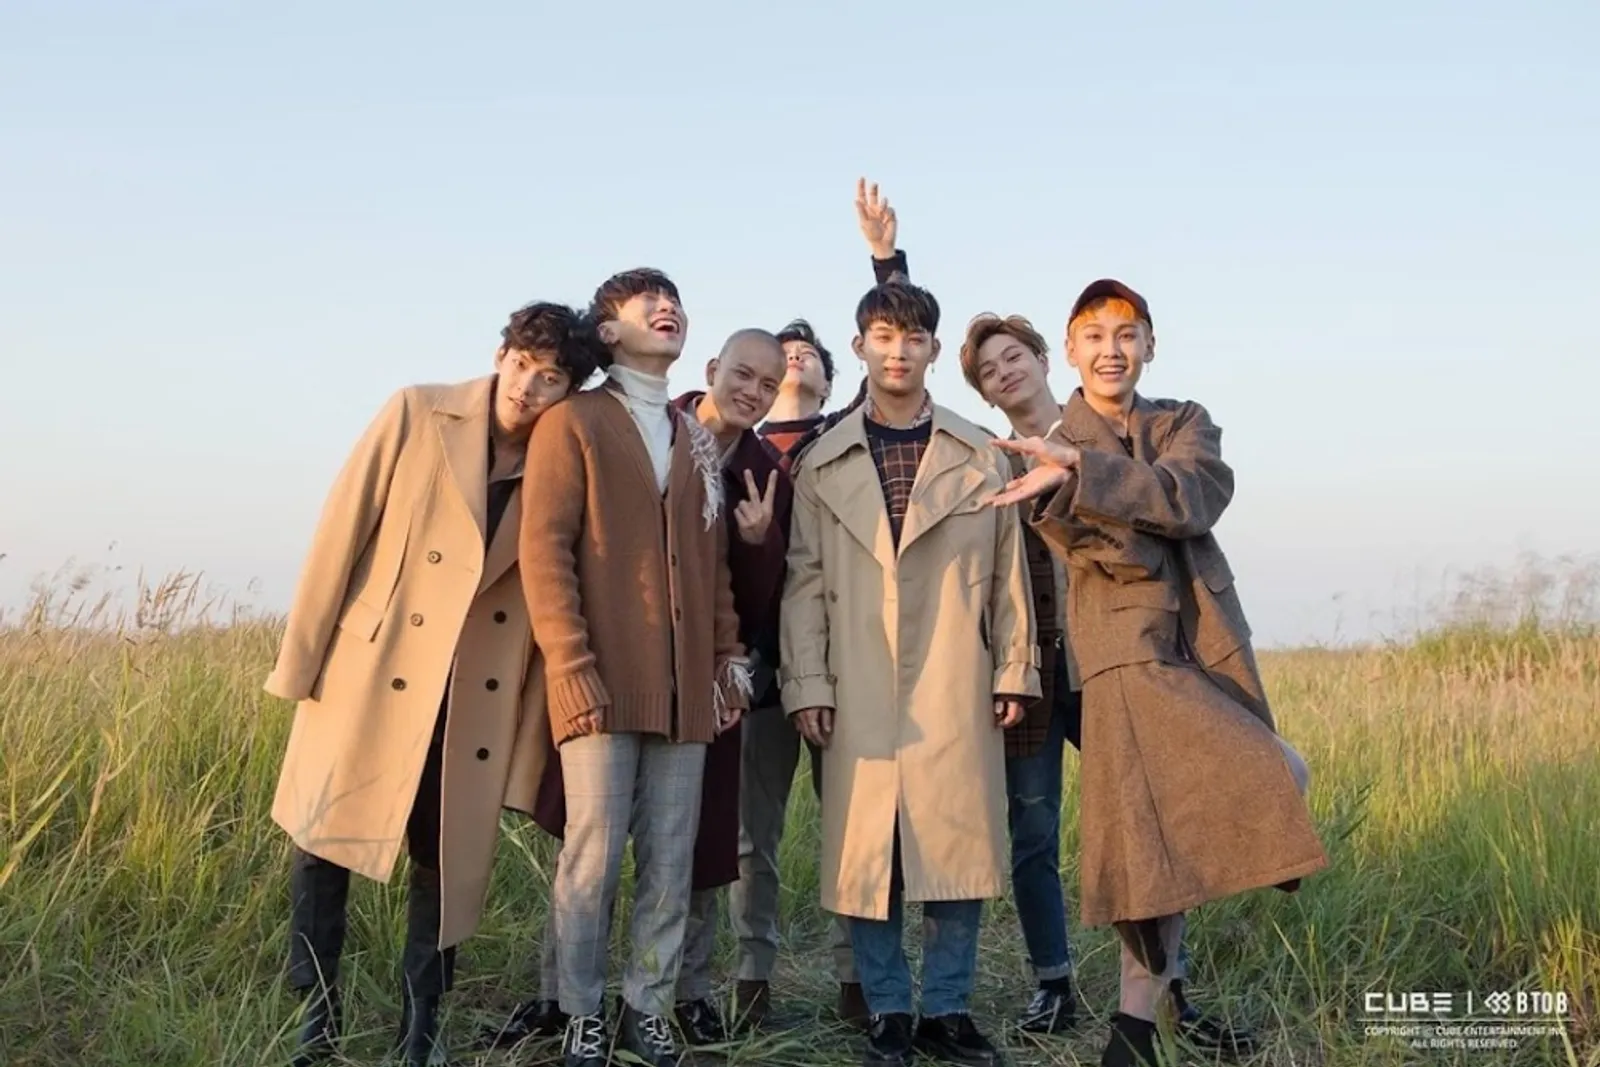 Profil dan Perjalanan Karier BTOB, Grup K-Pop dengan Segudang Bakat